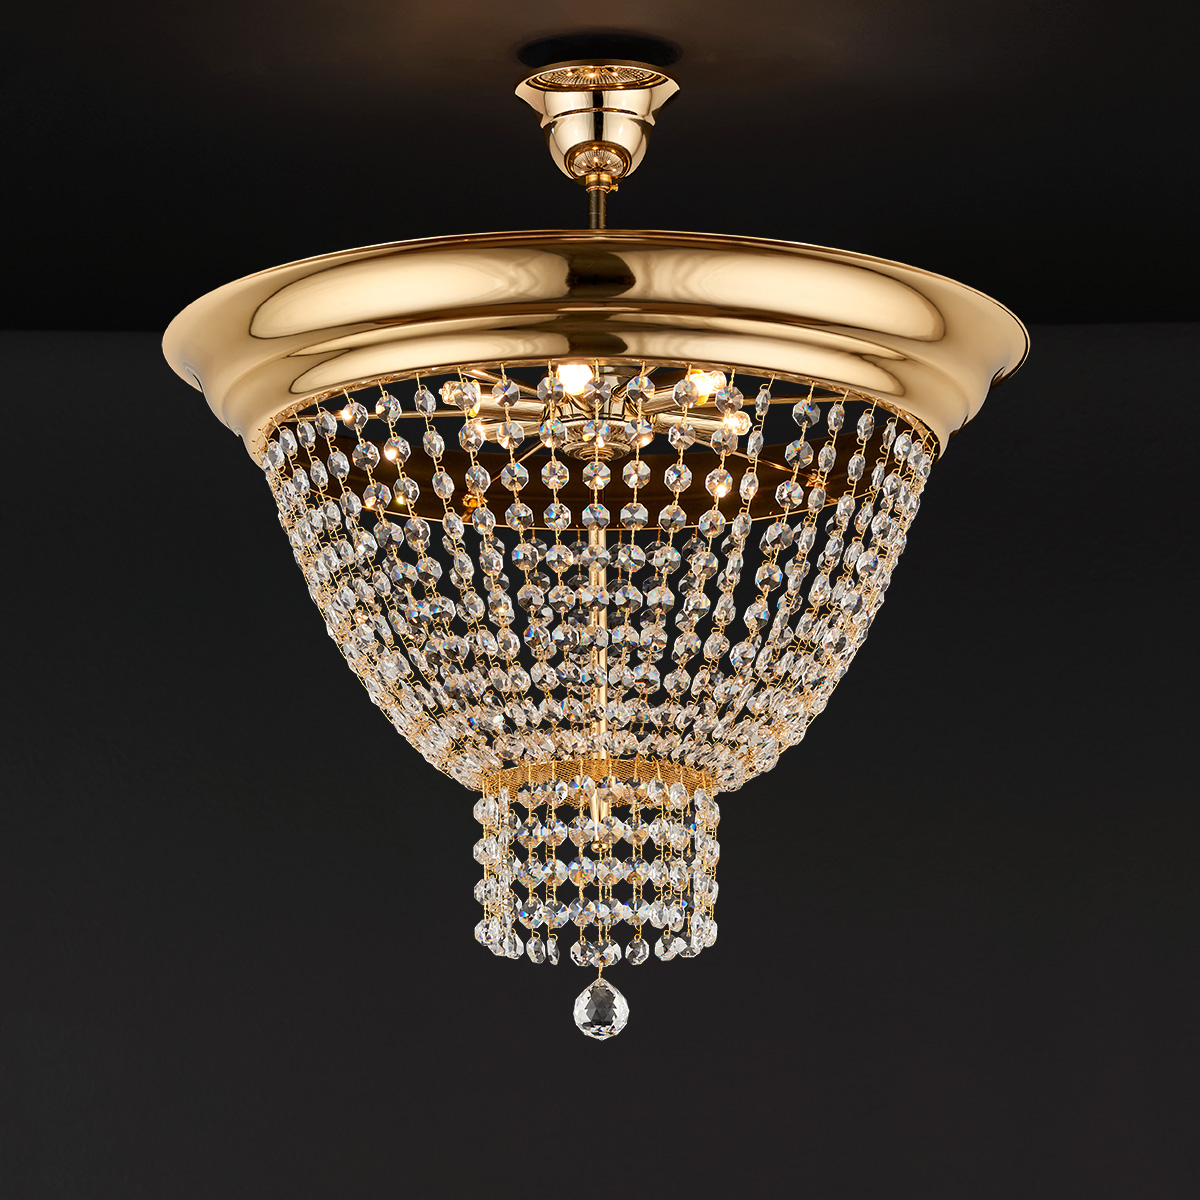 Κλασικό φωτιστικό οροφής με κρύσταλλα ΦΑΙΔΡΑ classic ceiling lamp with crystal accents